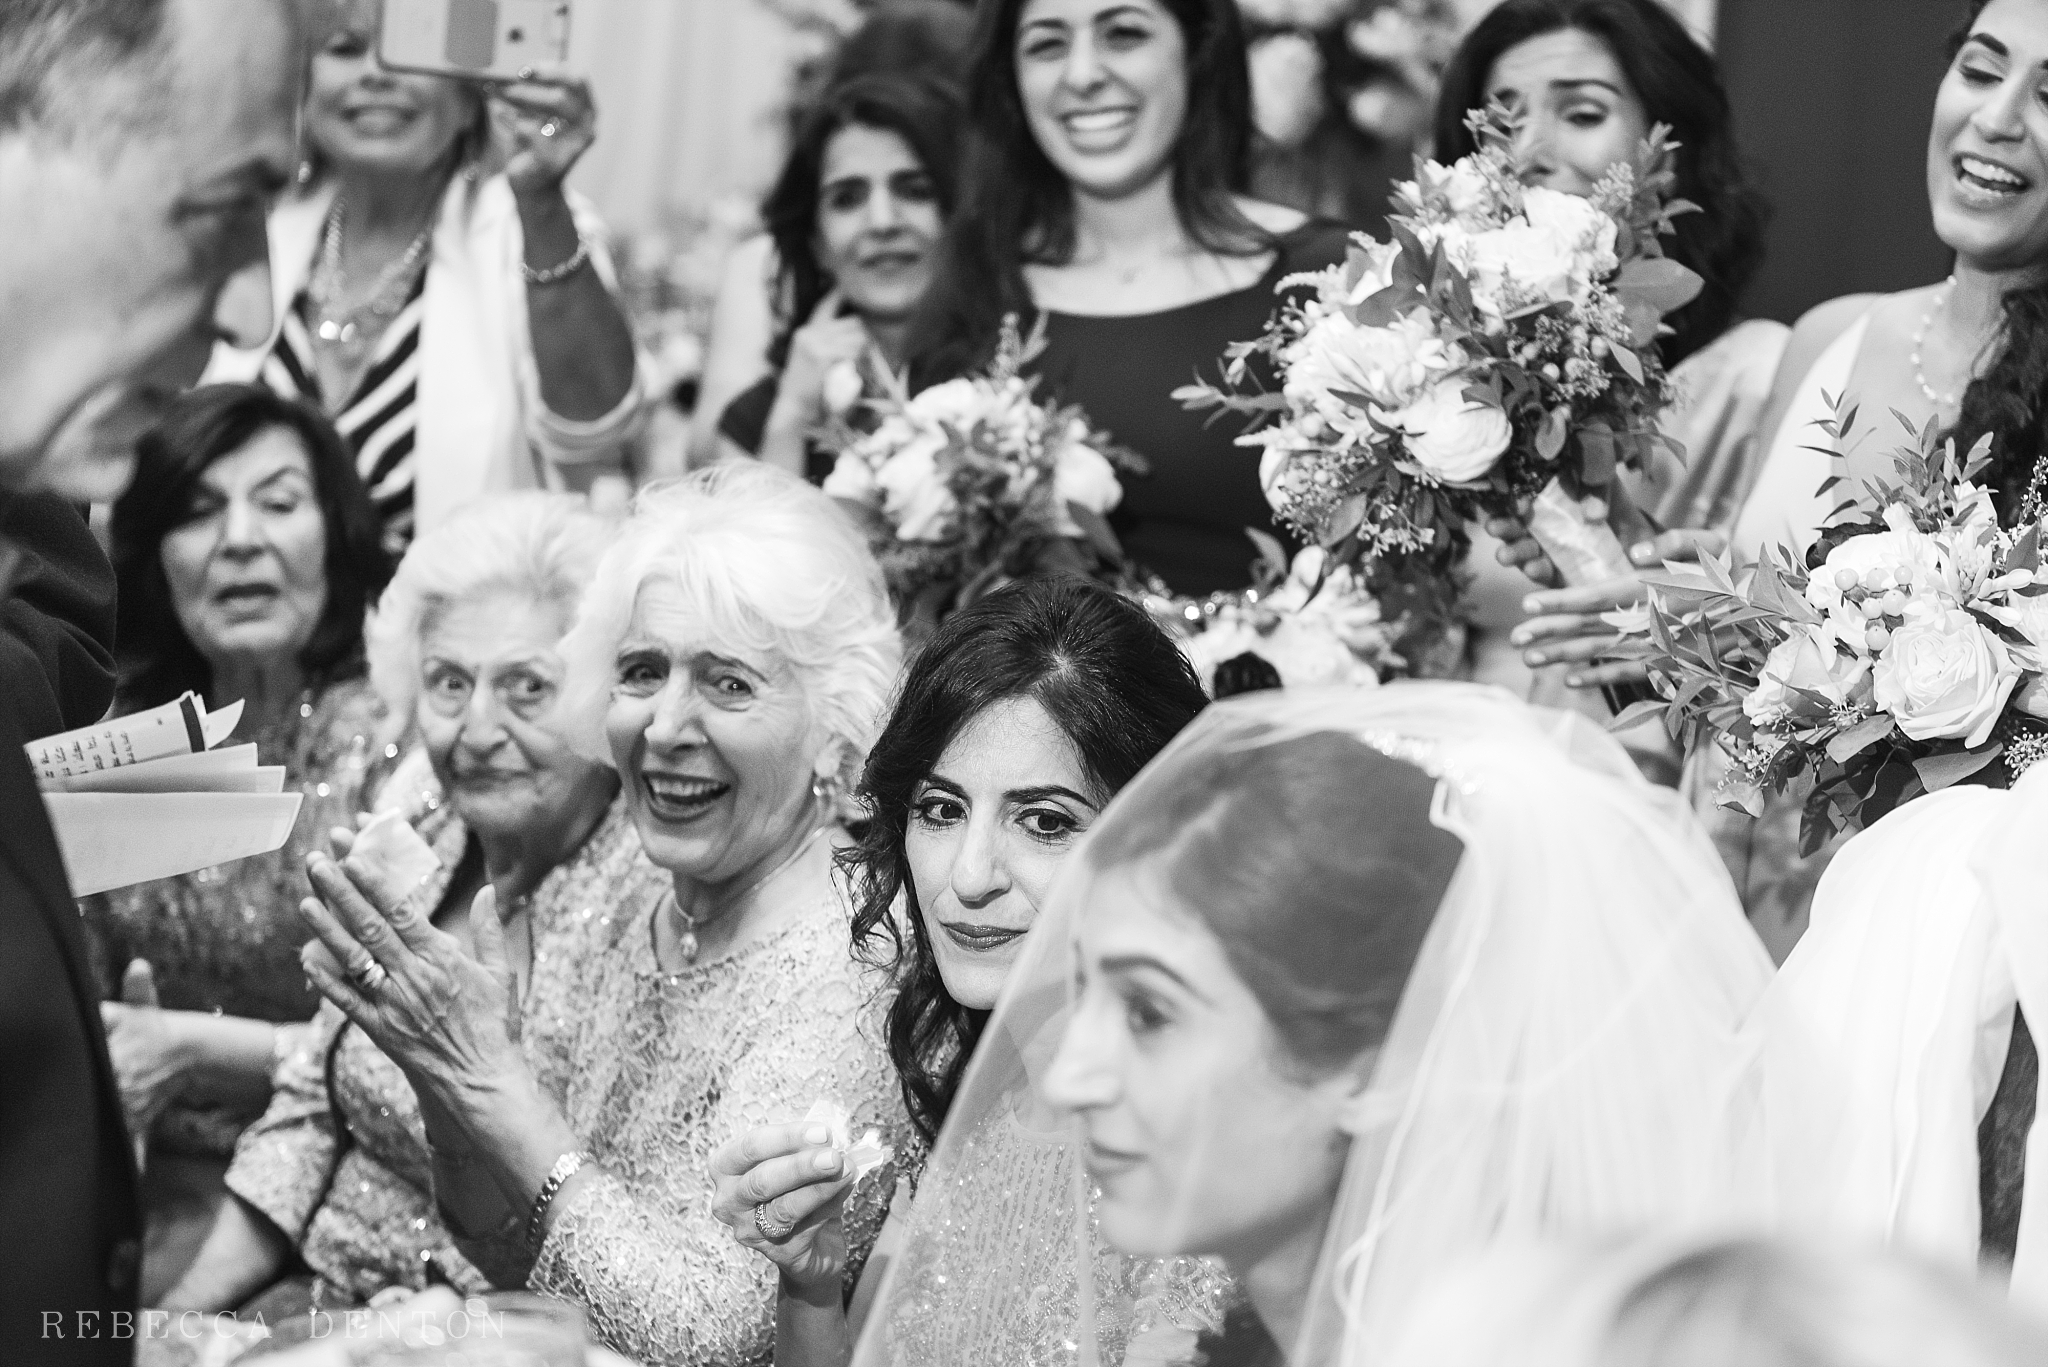 Bedeken ceremony Jewish wedding